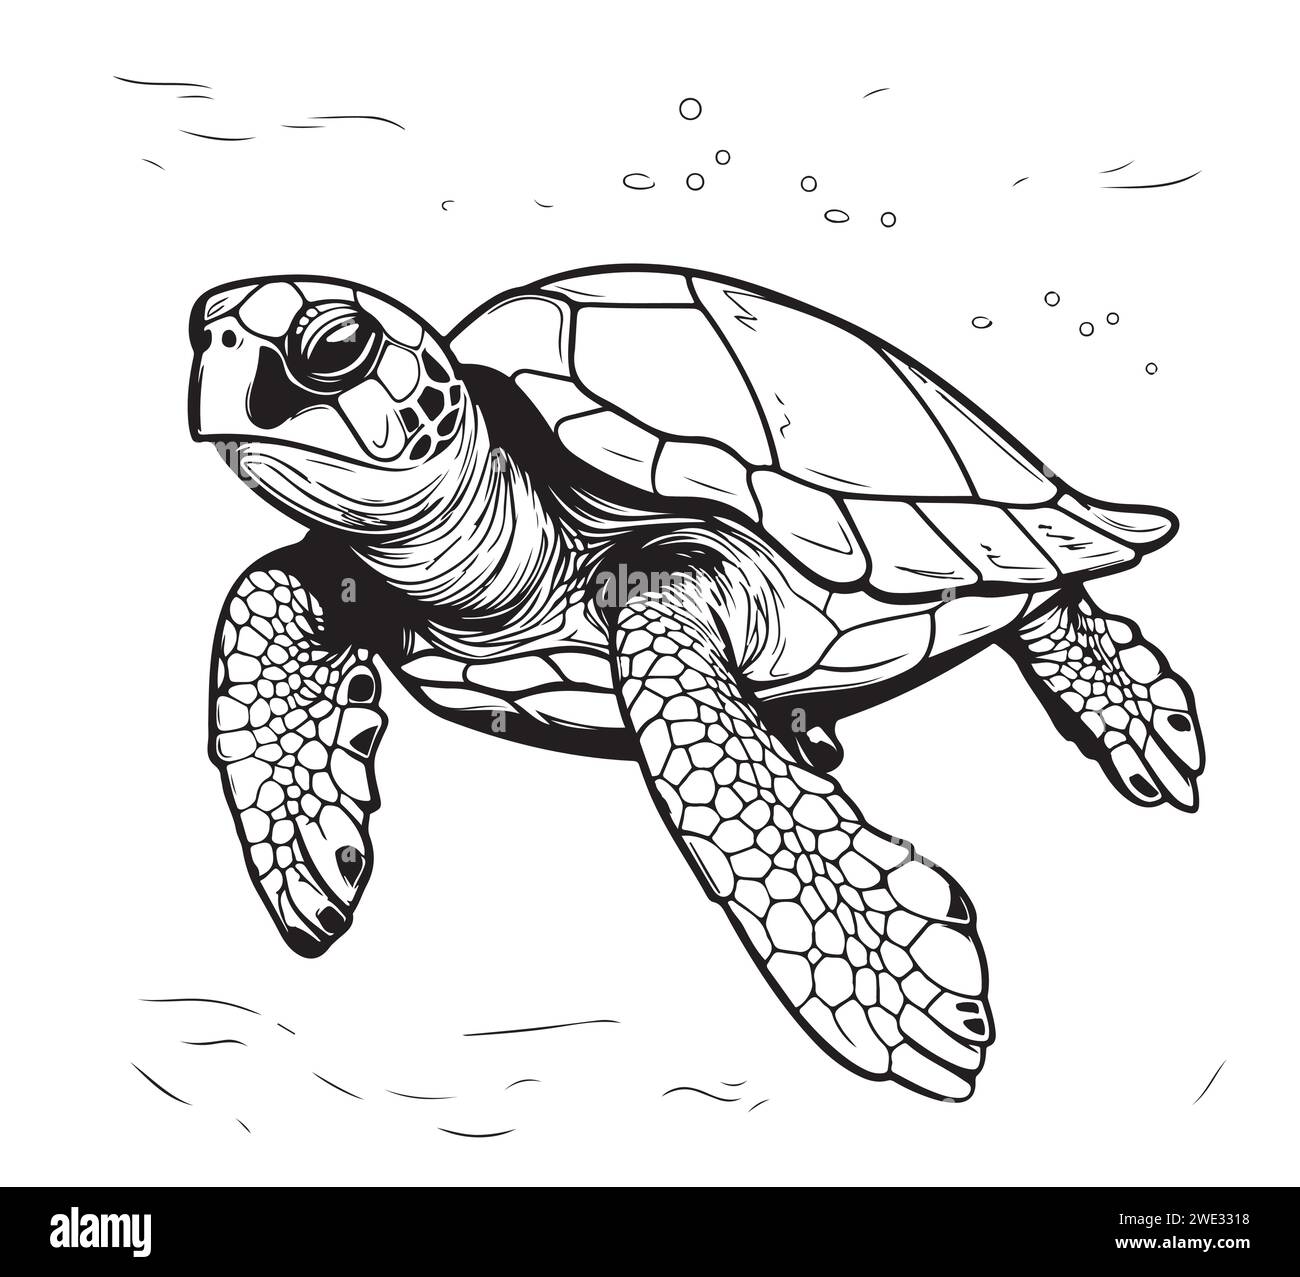 Tortue de mer dessin de style gravure dessiné à la main animaux sous-marins illustration vectorielle. Illustration de Vecteur